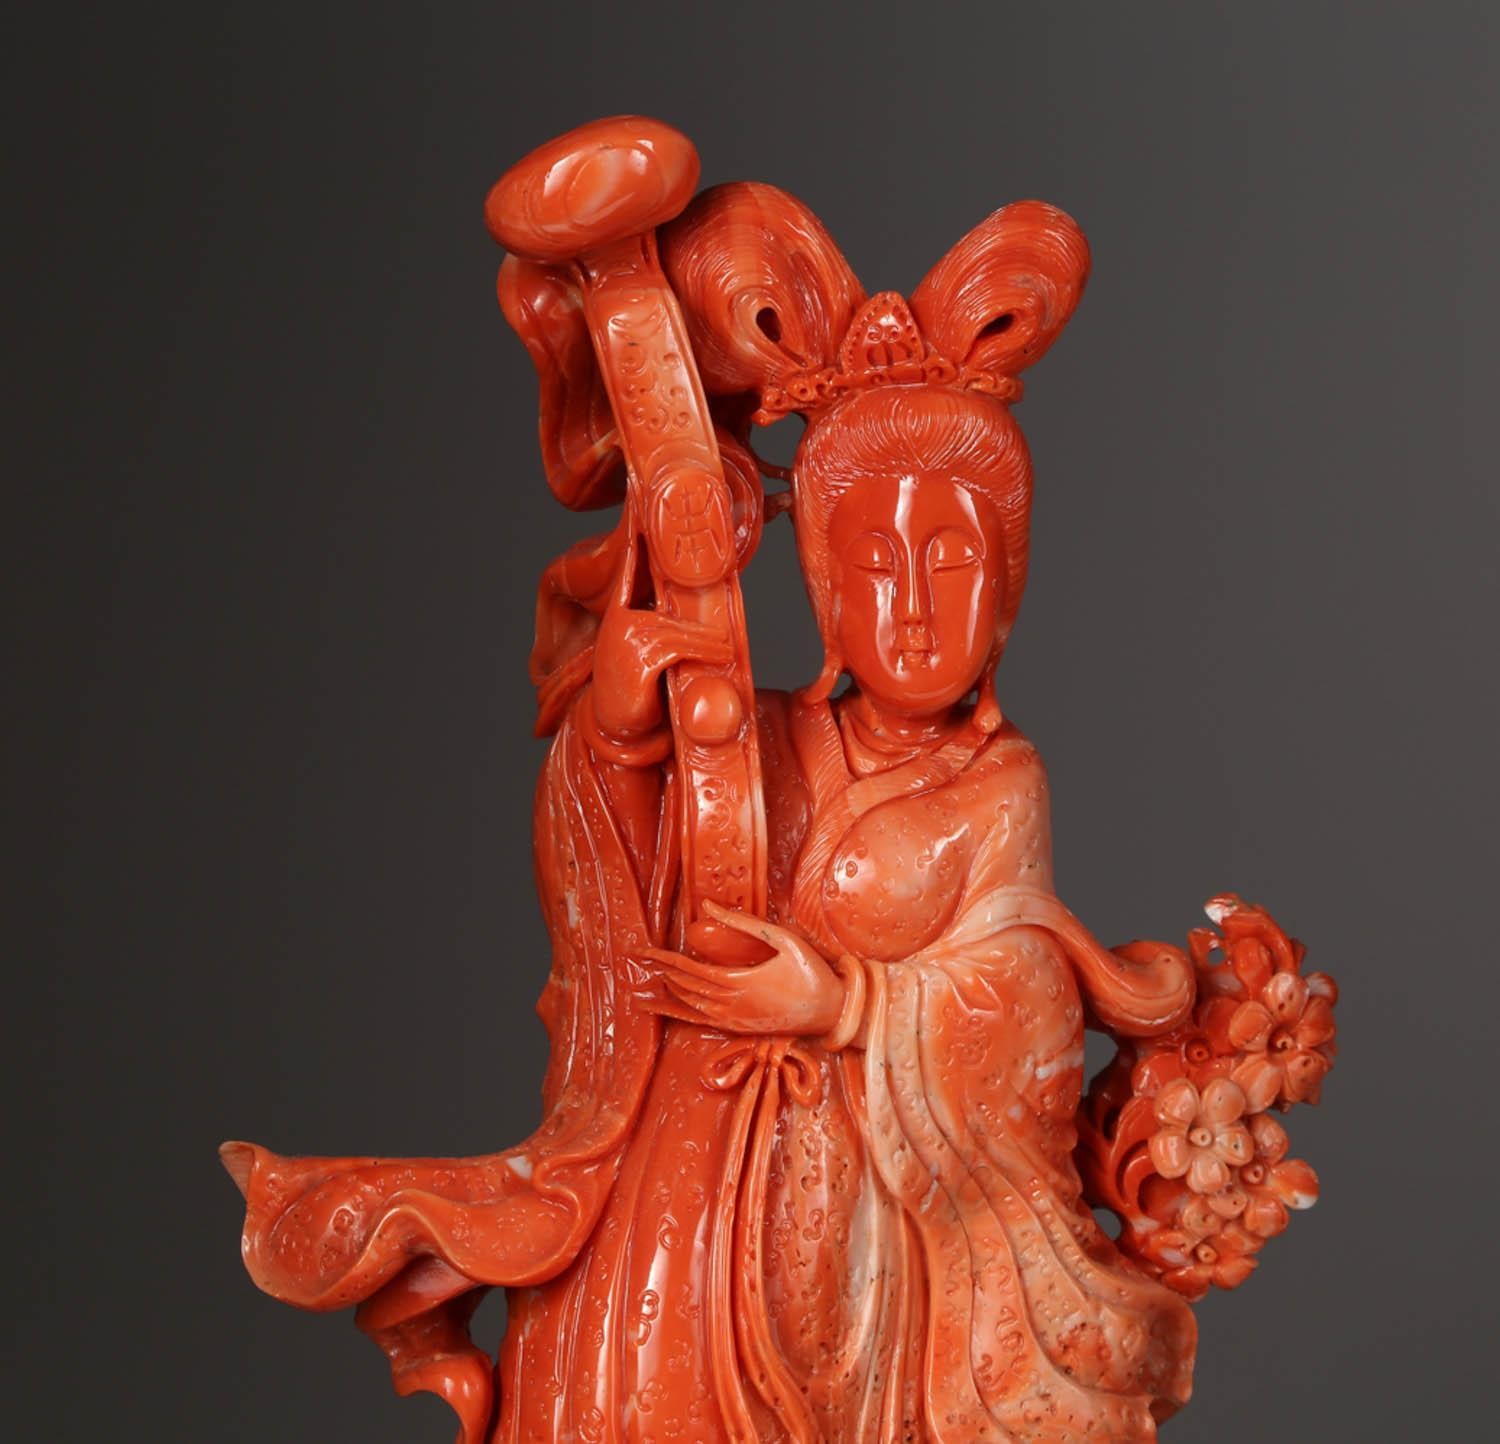 Eine außergewöhnliche chinesische geschnitzte Korallenfigur eines Guanyin mit Hirsch.

Sehr fein geschnitzt. Mit originalem Holzsockel.

Maße: Koralle: 12